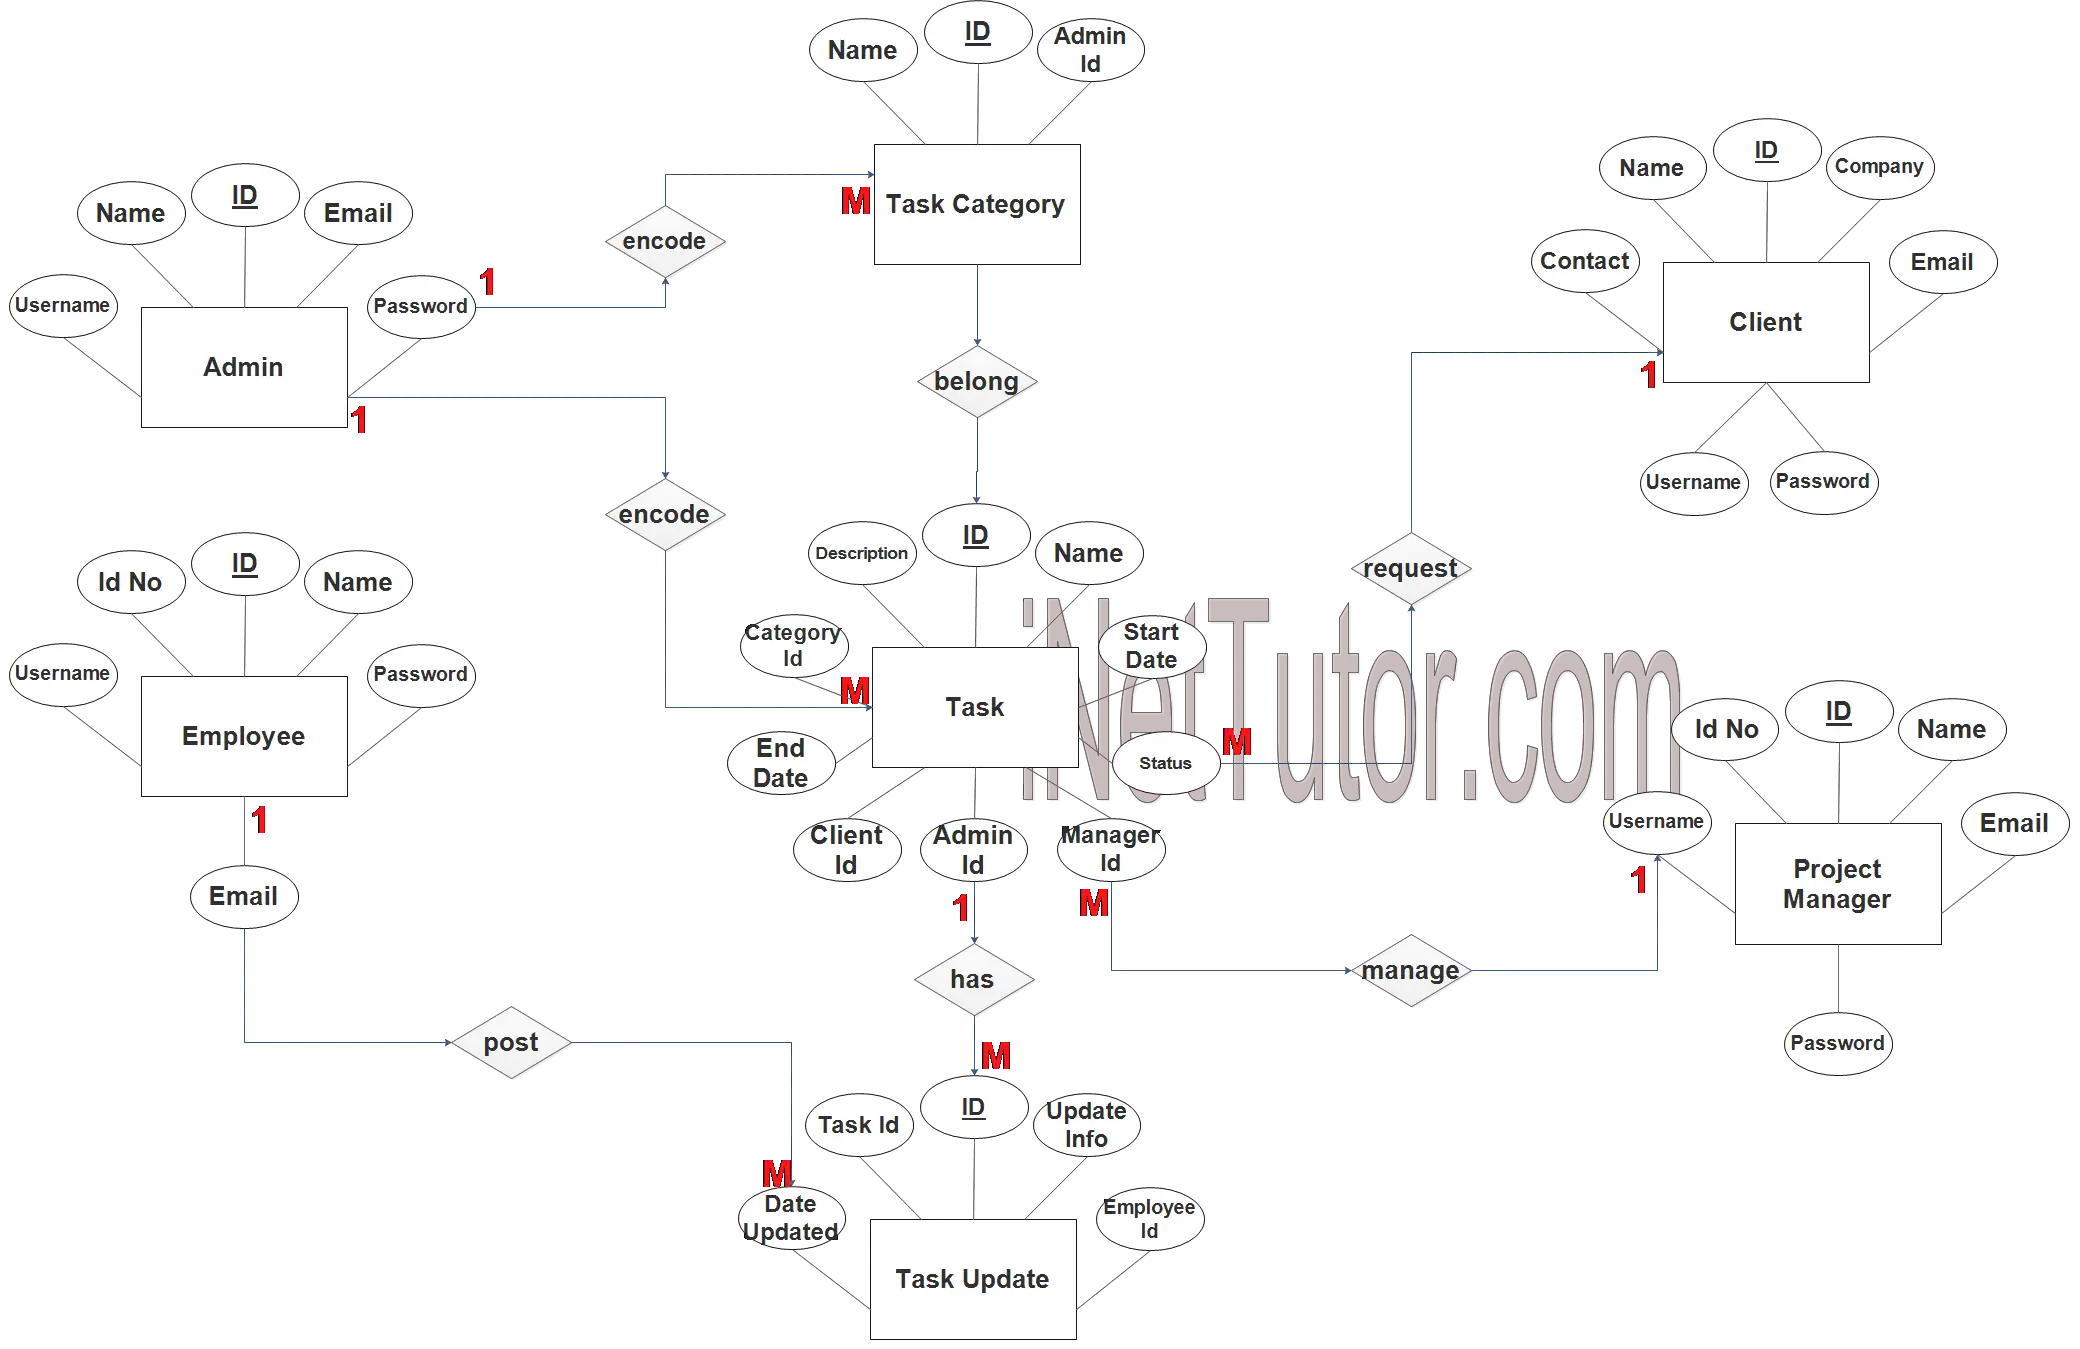 Task Management System ER Diagram - Step 3 Complete ERD